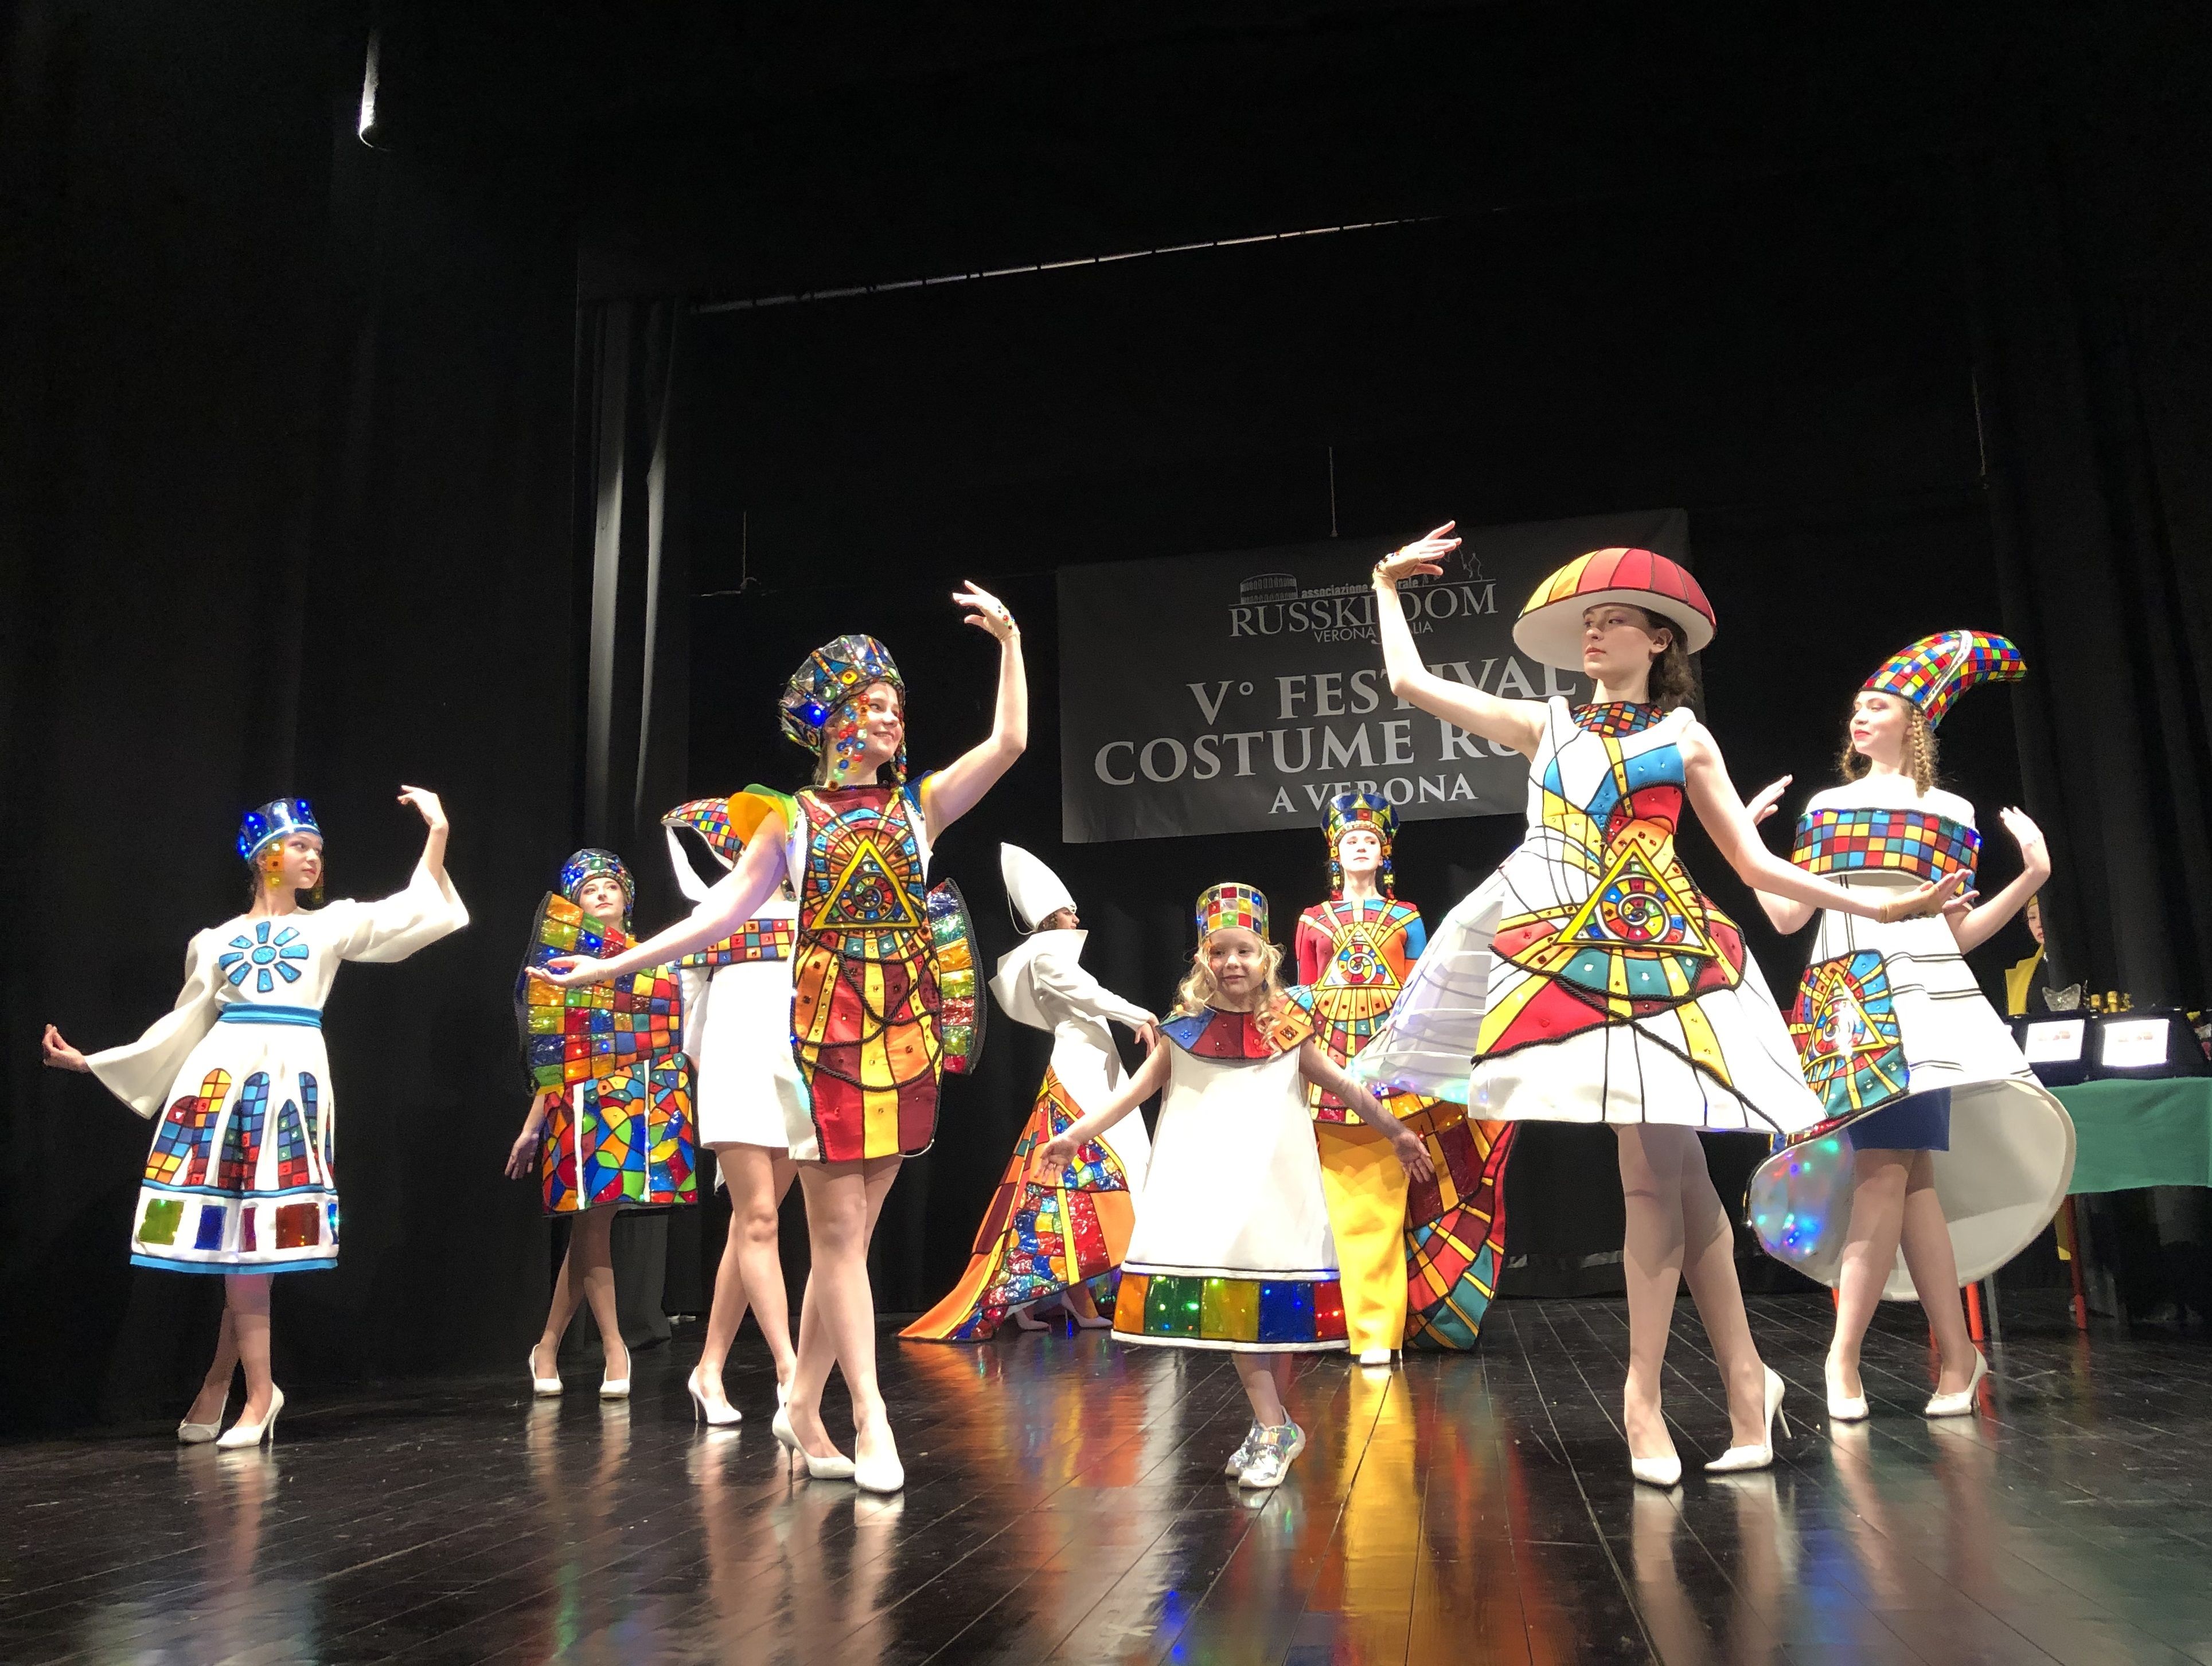 Фестиваль русского костюма в Италии: победа юных московских дизайнеров и карнавал